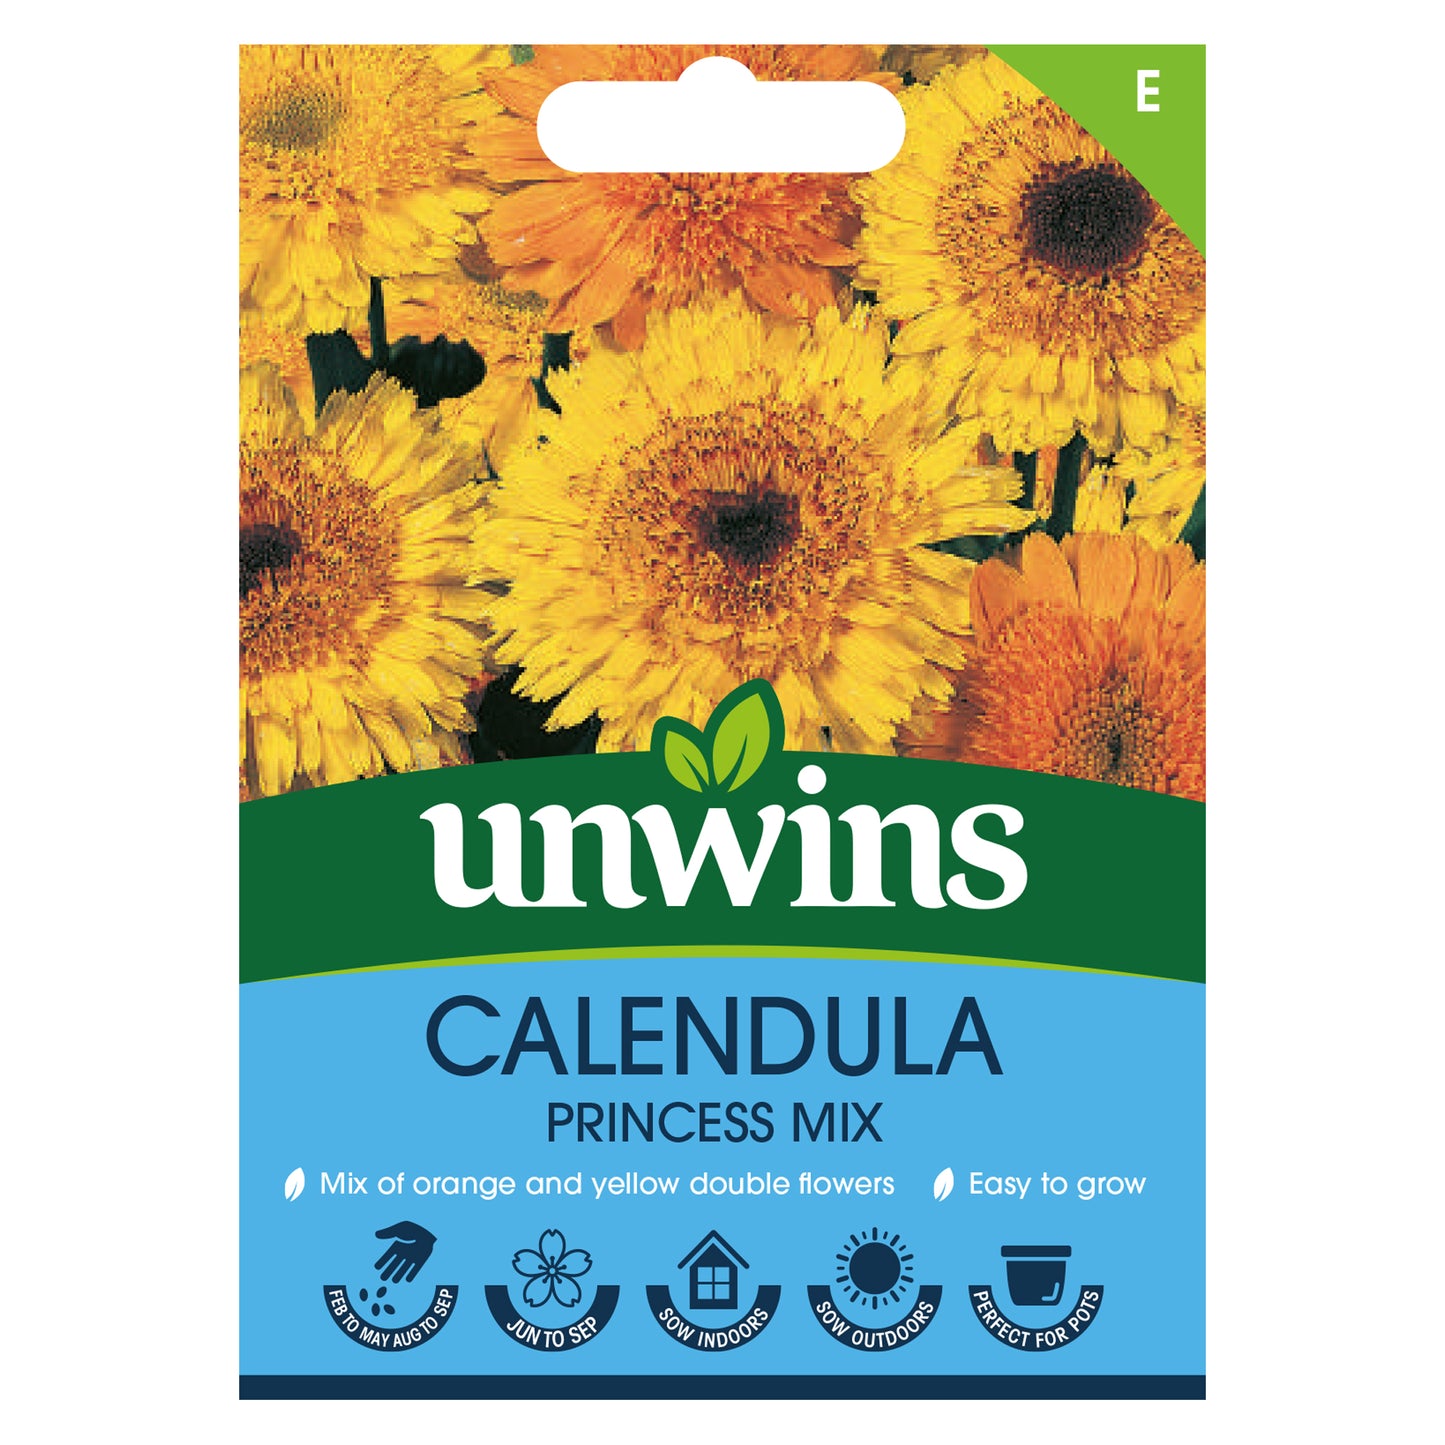 Unwins Calendula Princess Mix Seeds Front